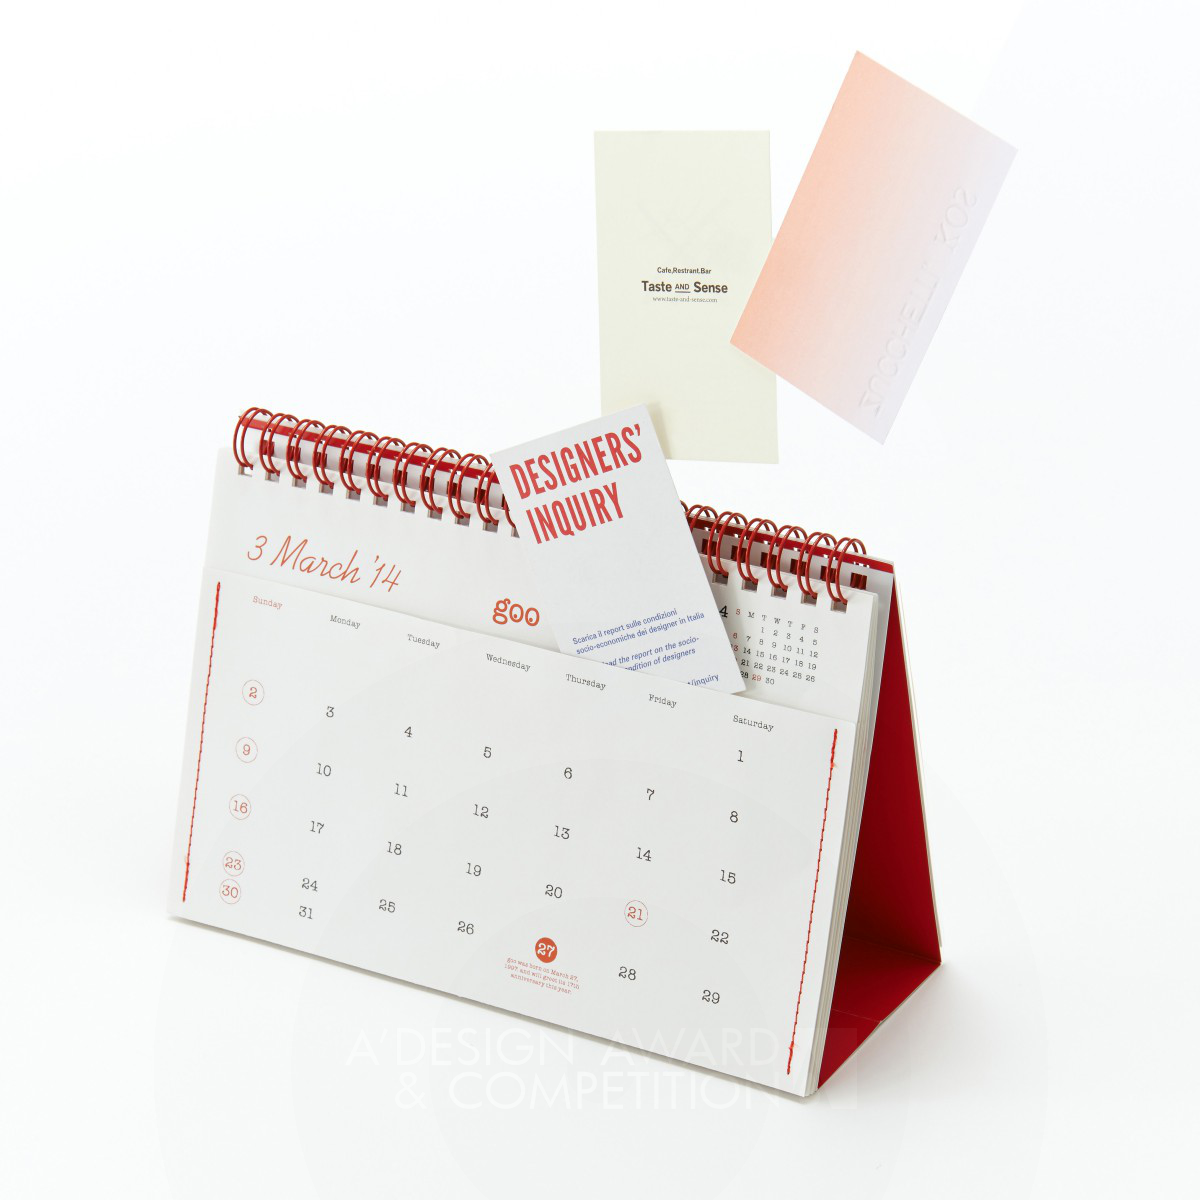 17th goo Calendar “12 Pockets 2014” Calendar by Katsumi Tamura